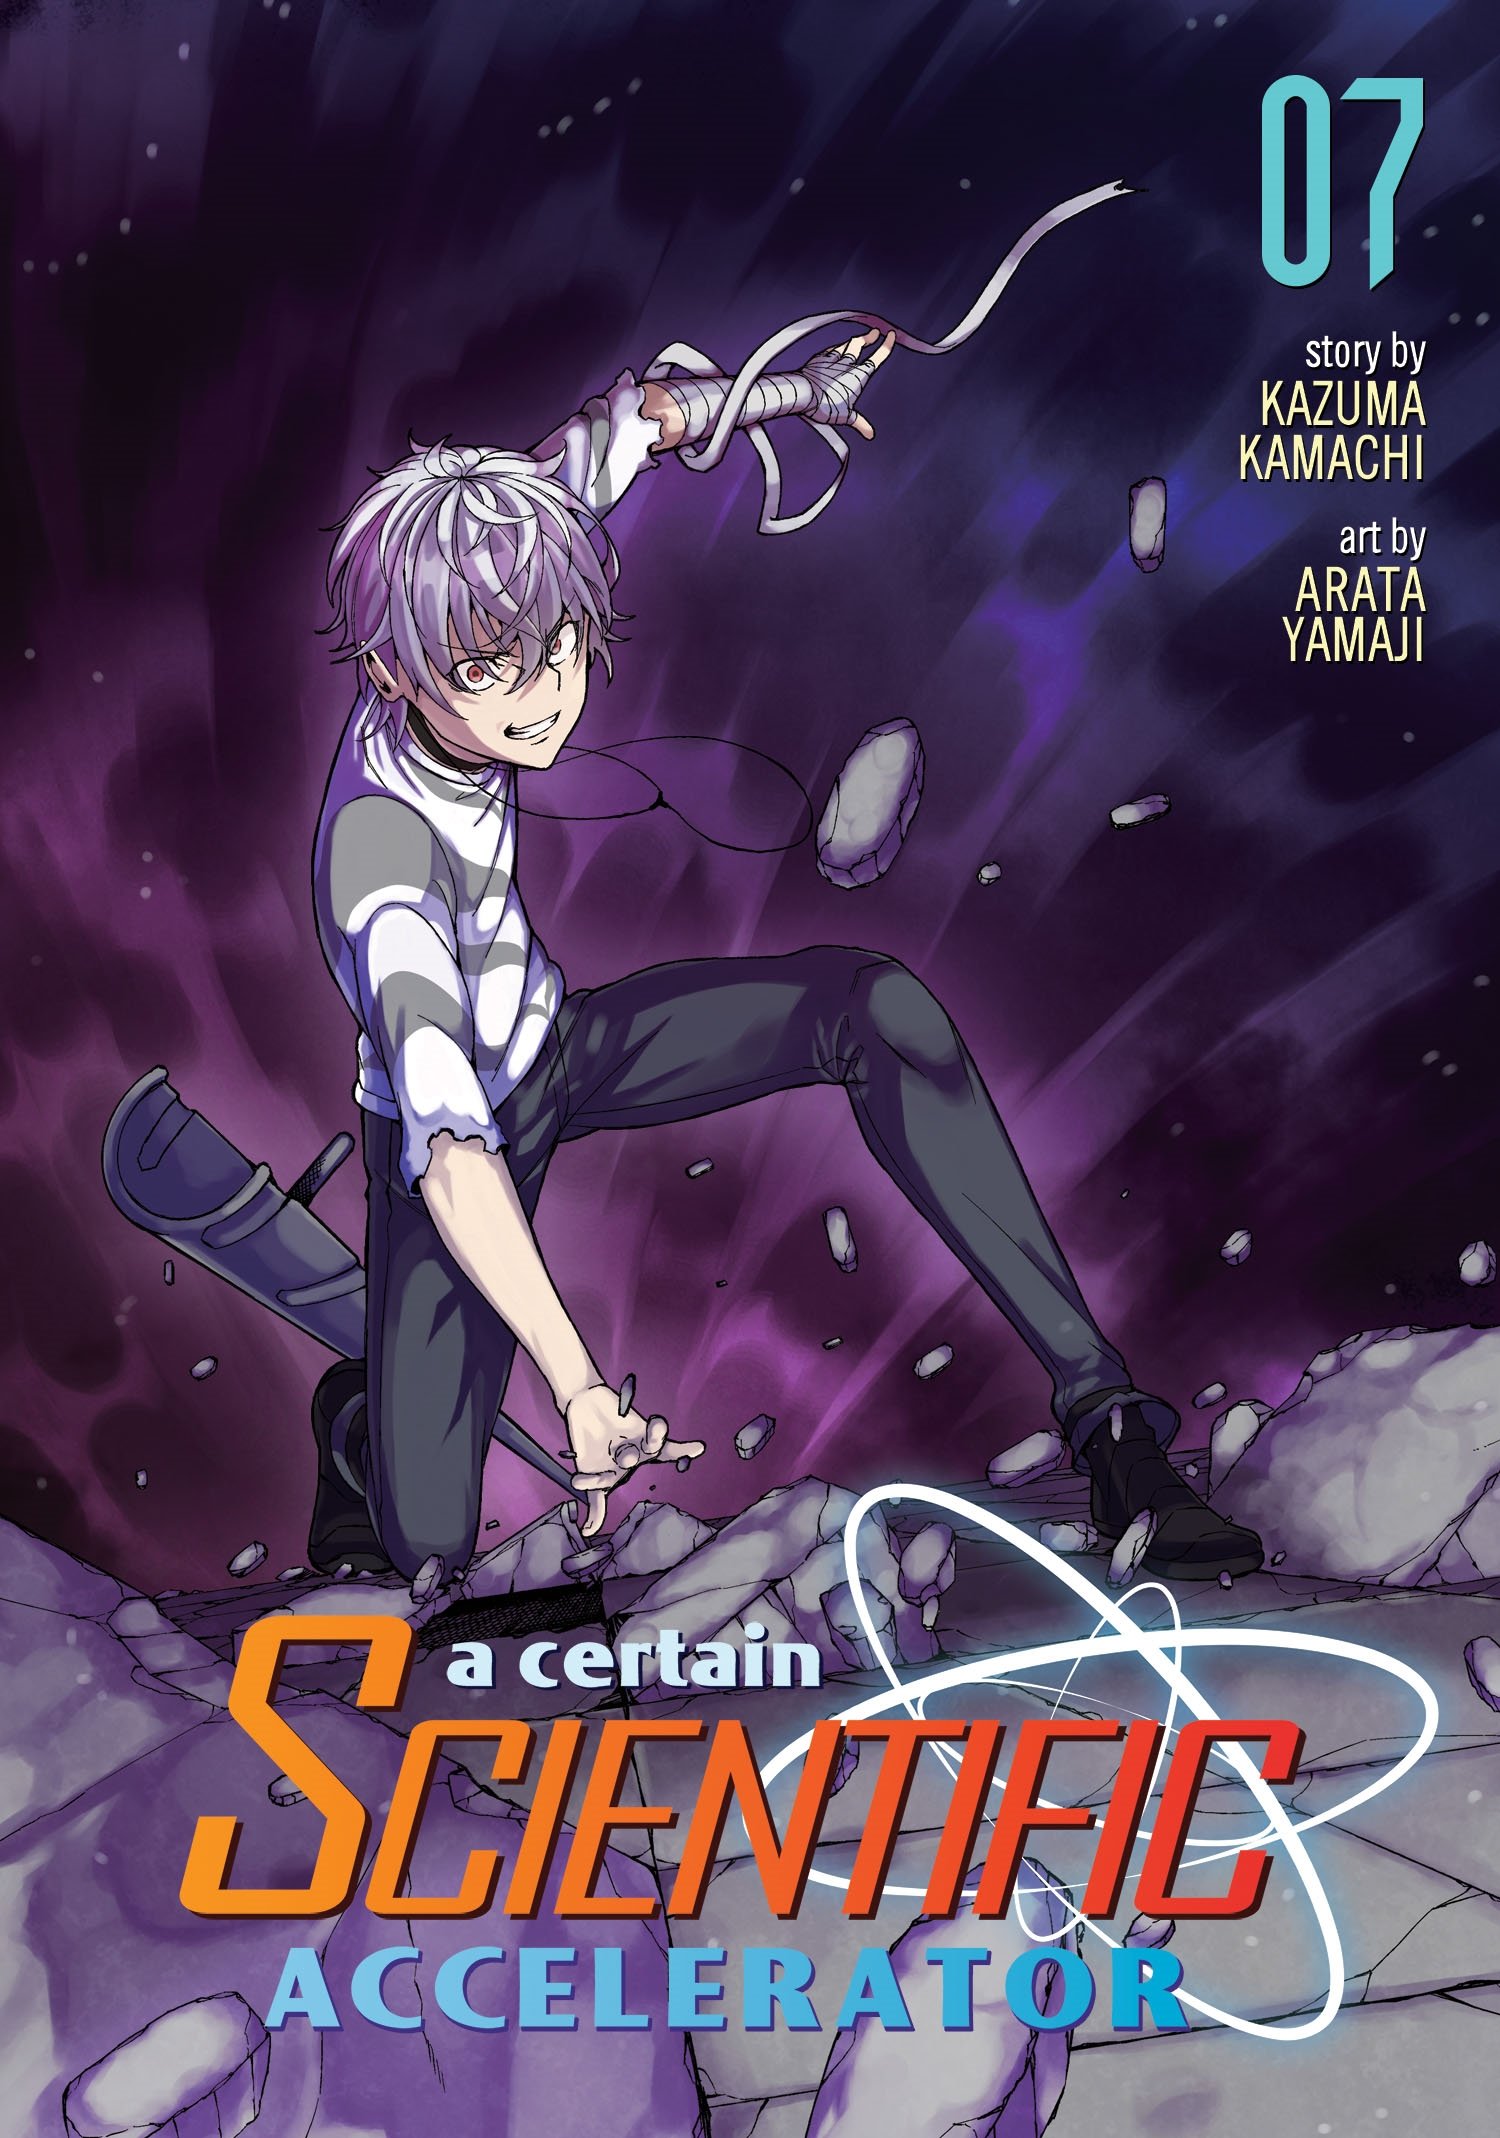 Toaru Kagaku no Accelerator Manga Volume 07 | Toaru Majutsu no 